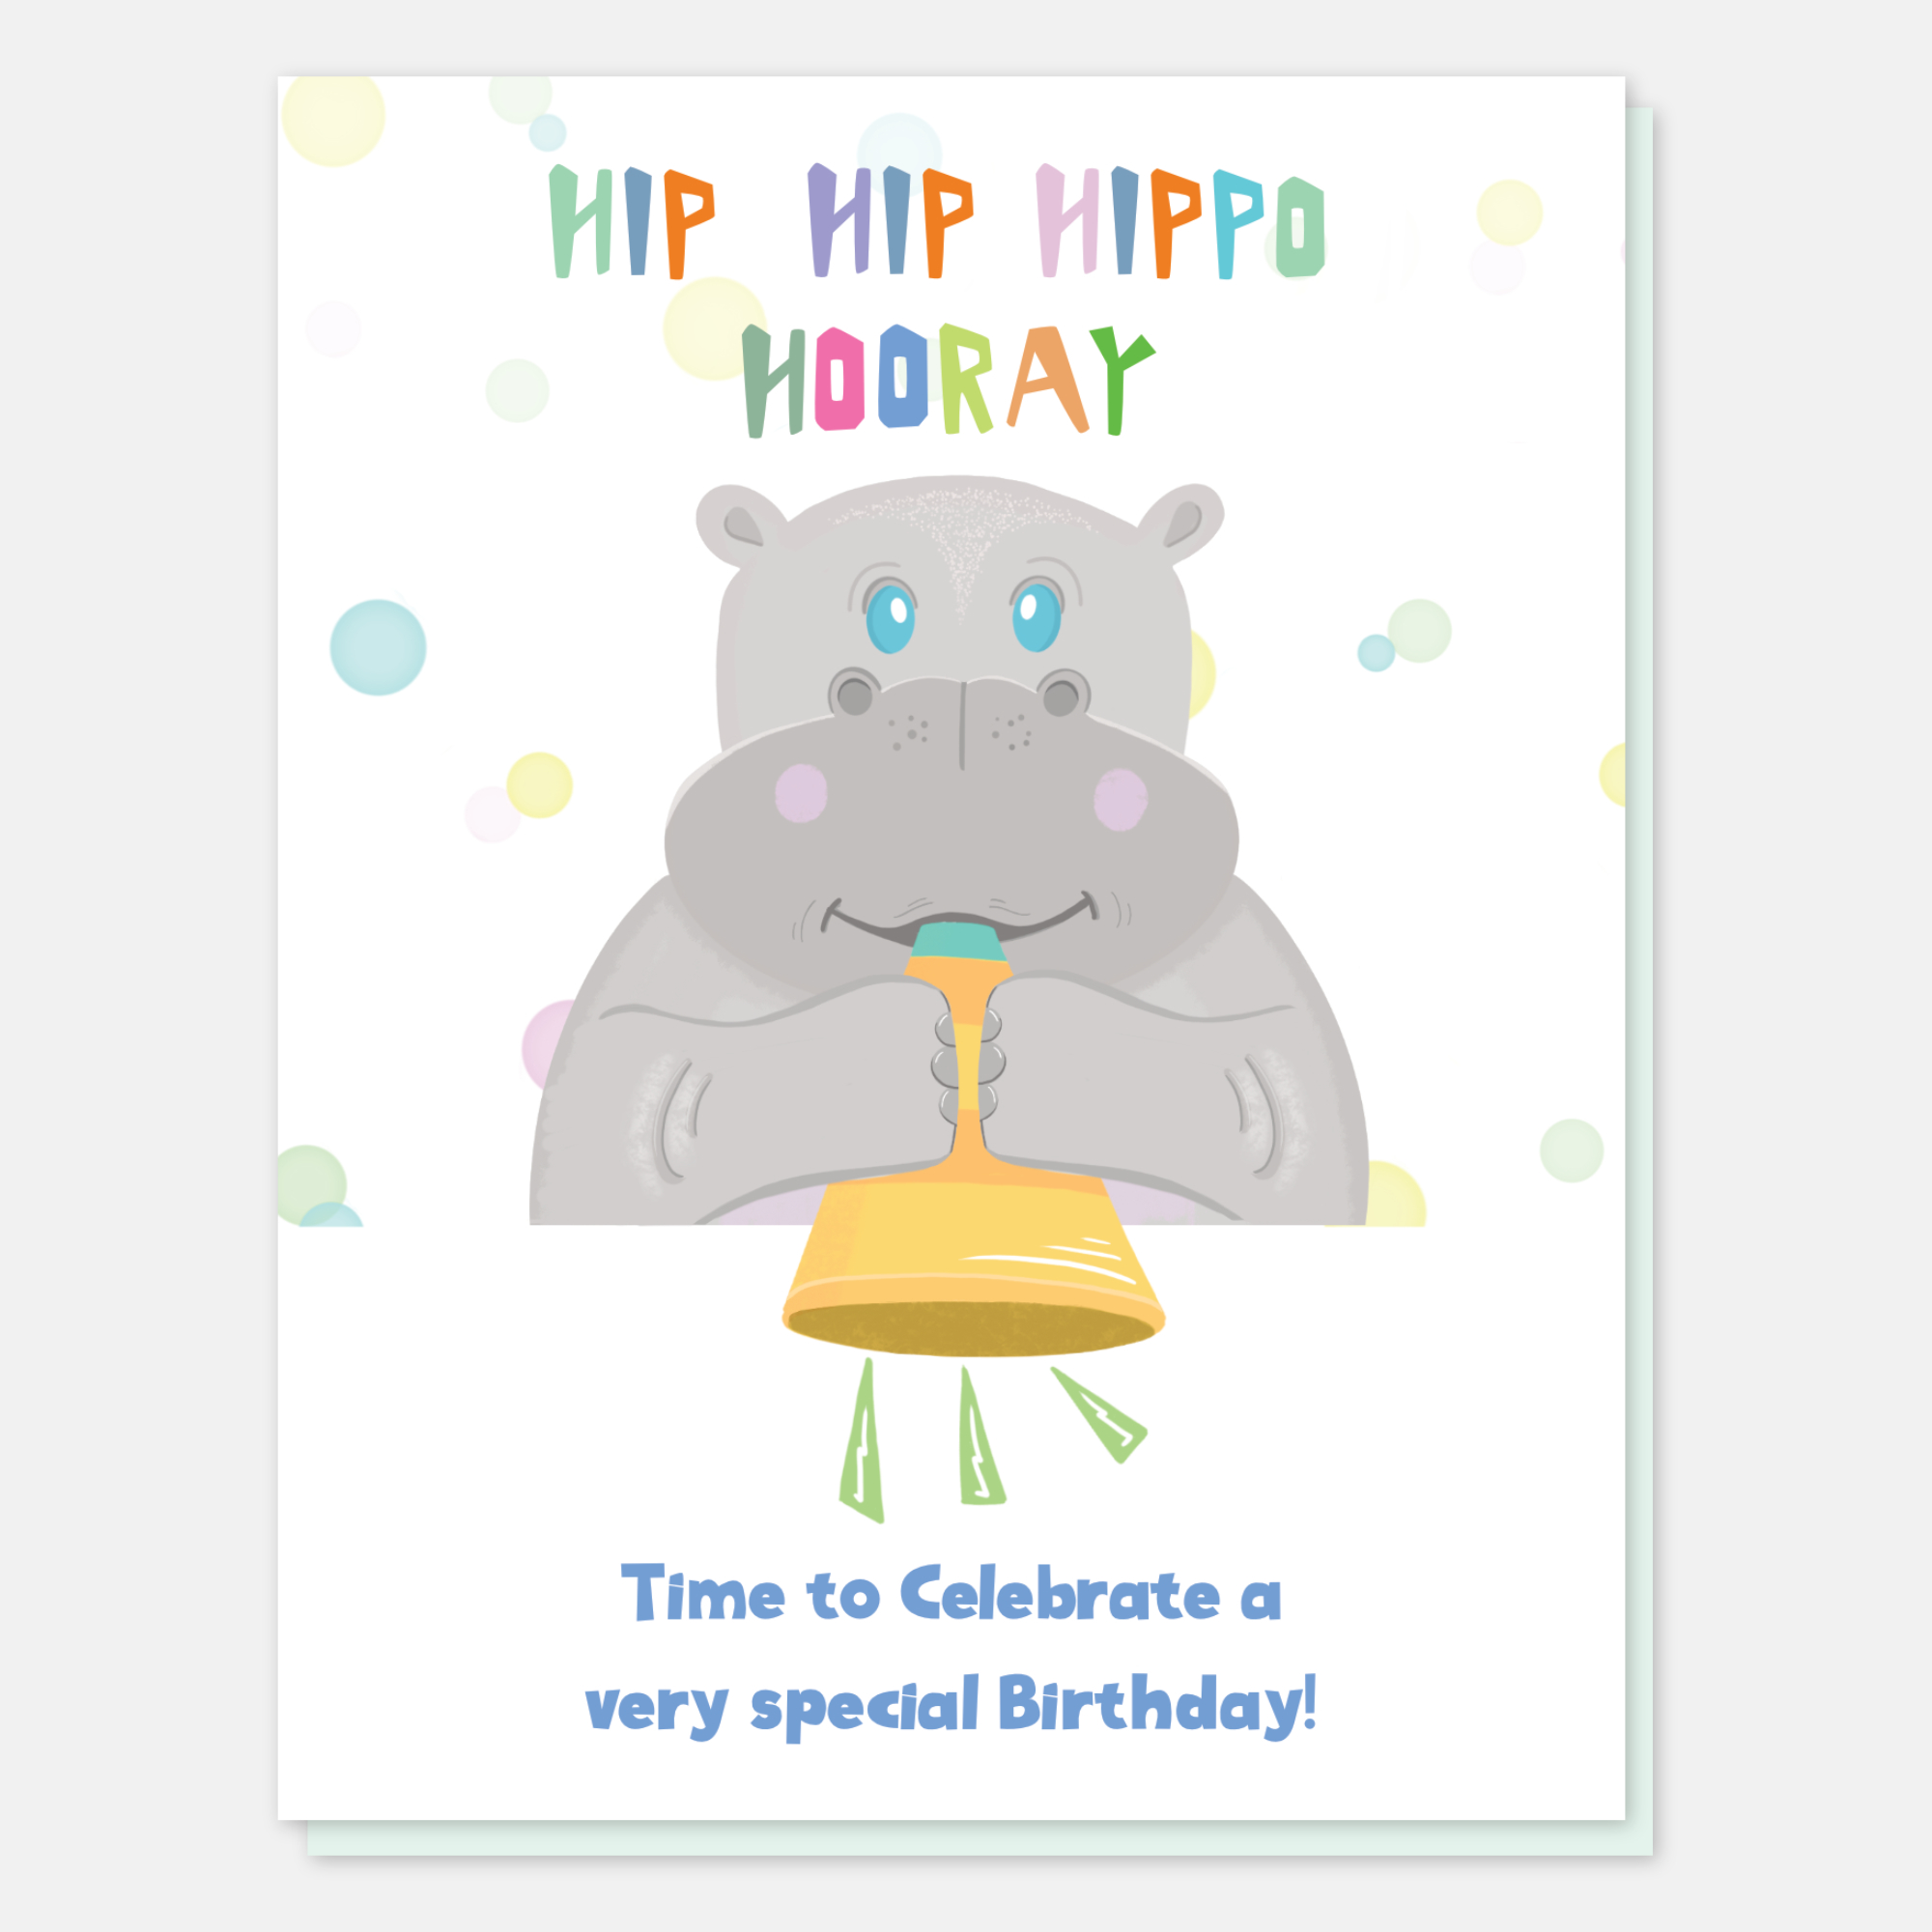 Hip Hip Hippo Hooray